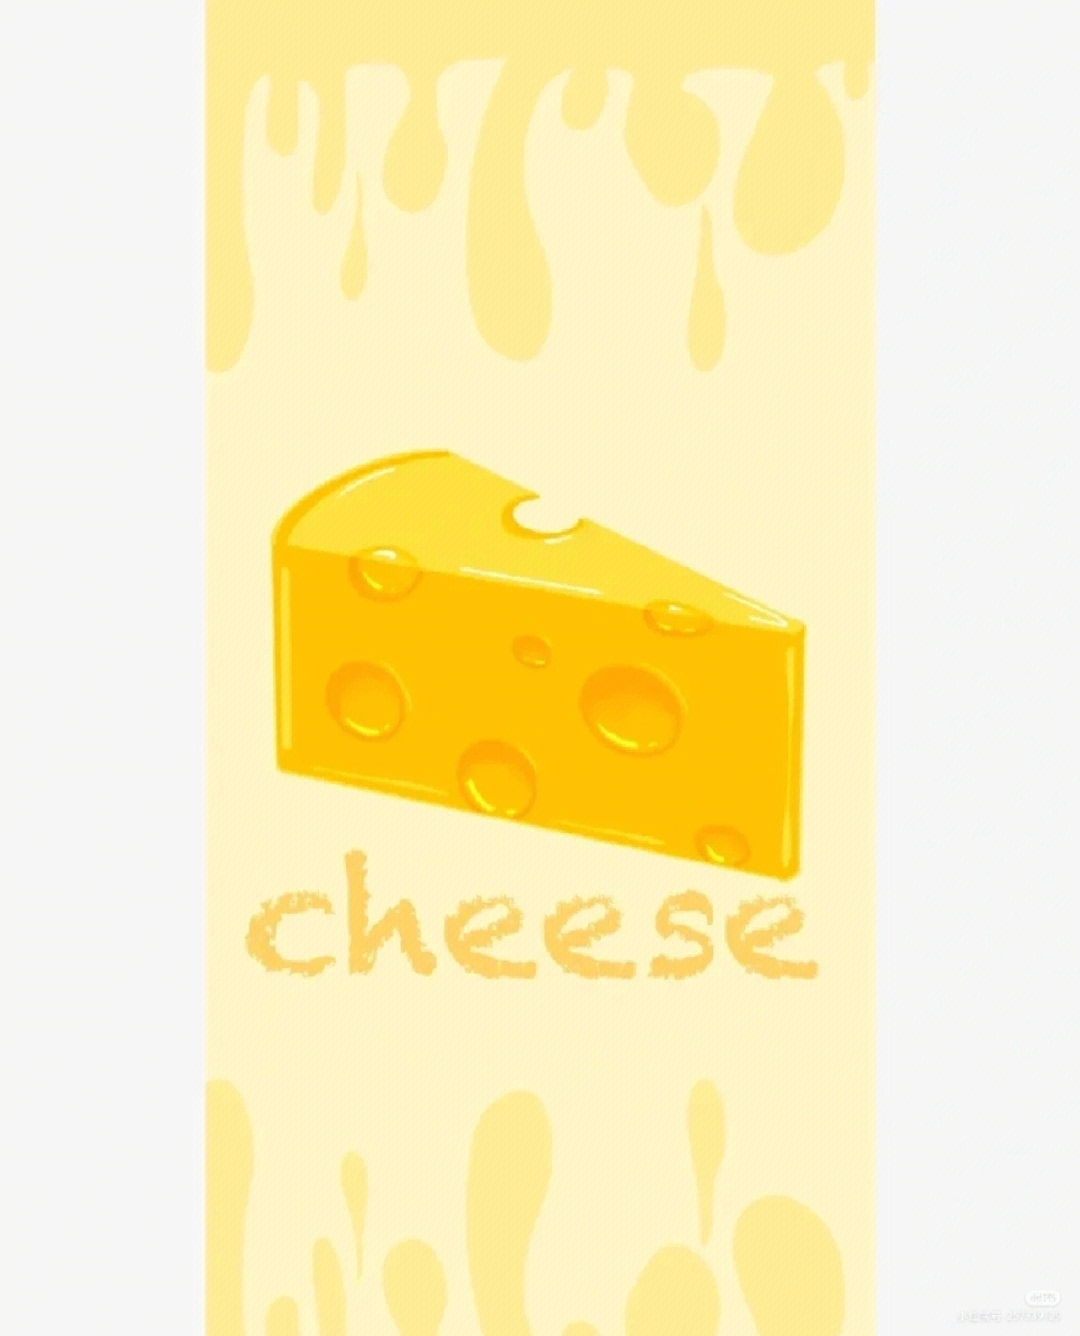 手写奶酪体壁纸图片